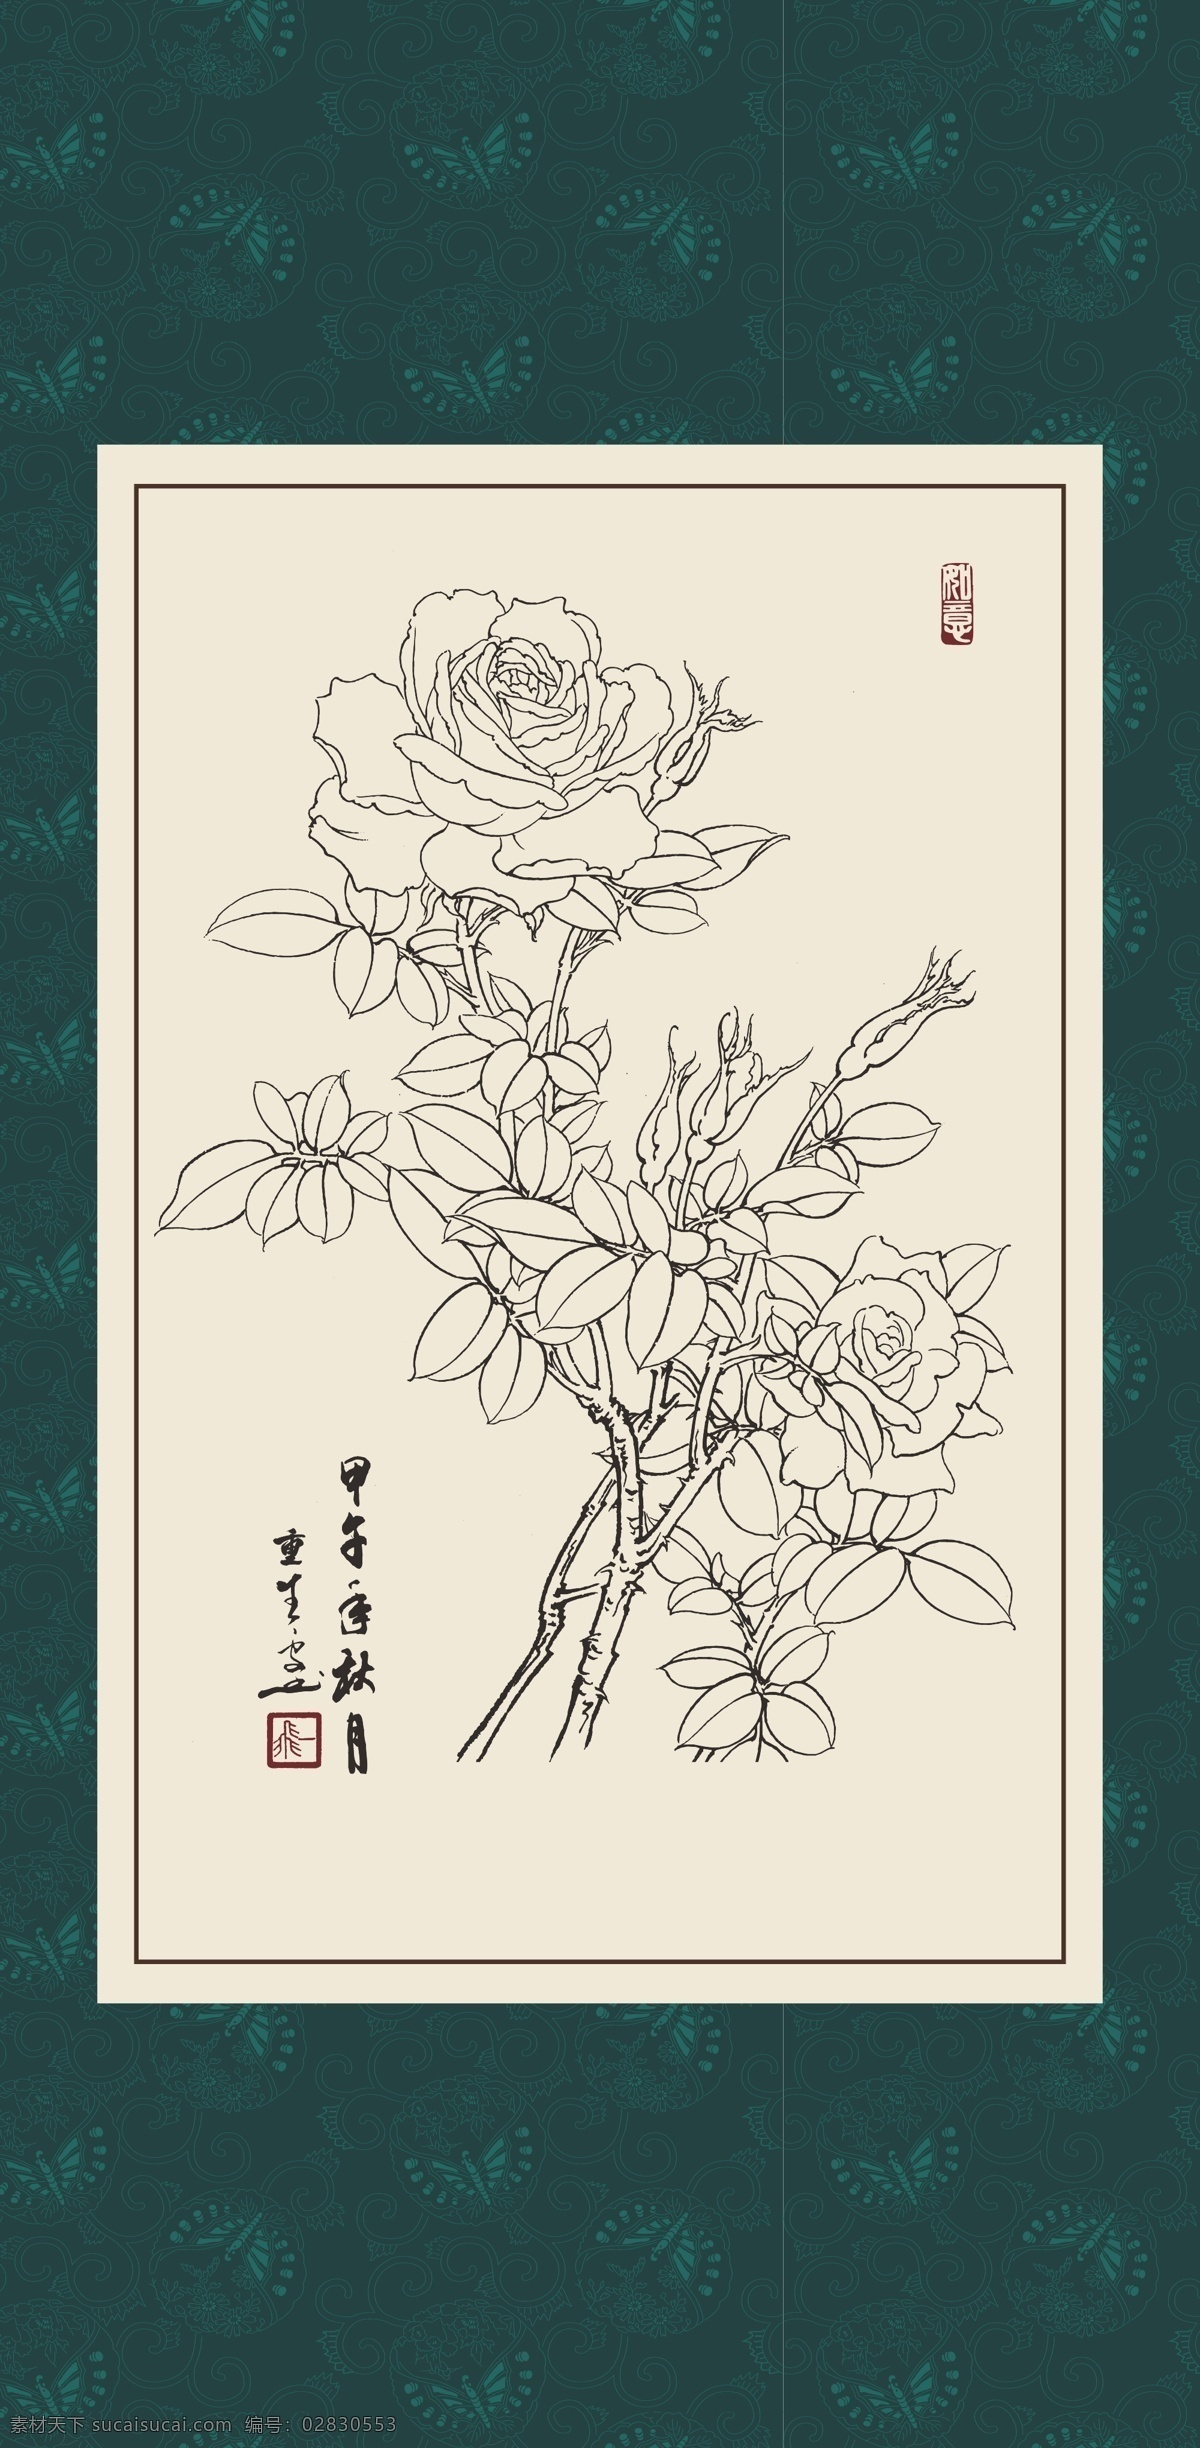 白描 线描 绘画 手绘 国画 印章 植物 花卉 工笔 gx150097 白描月季 玫瑰 文化艺术 绘画书法